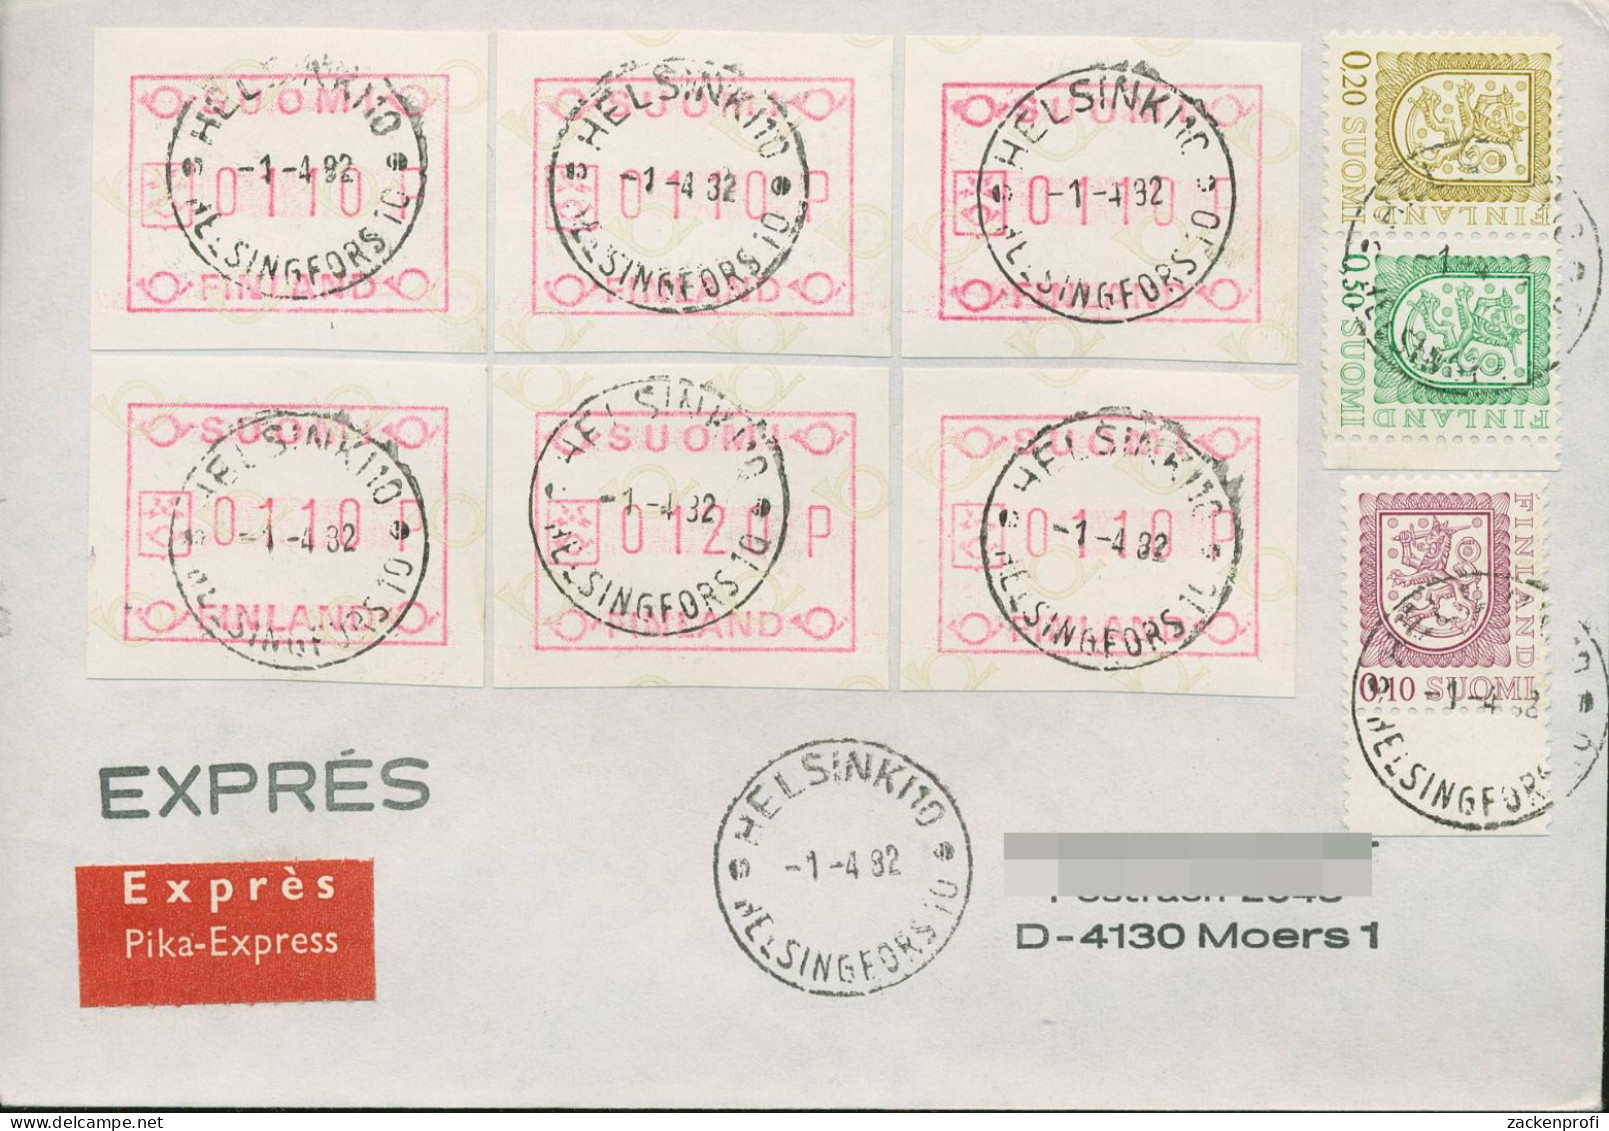 Finnland ATM 1982 Kl. Posthörner, FDC ATM 1.1 Auf Express-Brief (X80556) - Machine Labels [ATM]